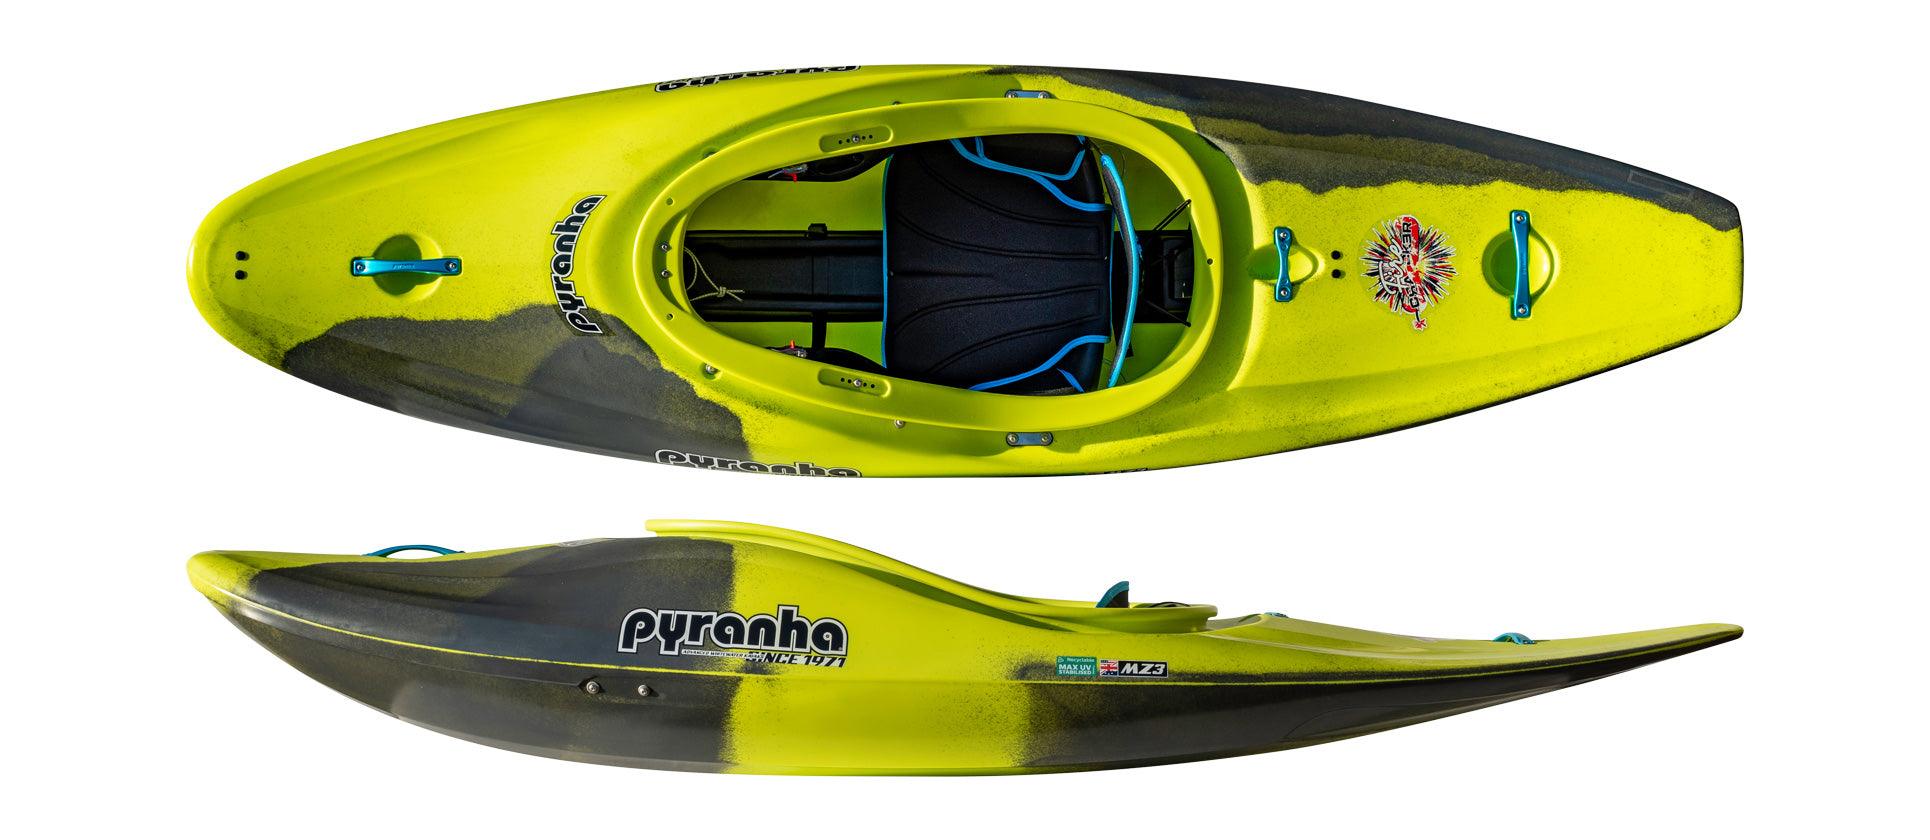 Pyranha Firecracker Whitewater Kayak - Festive Water